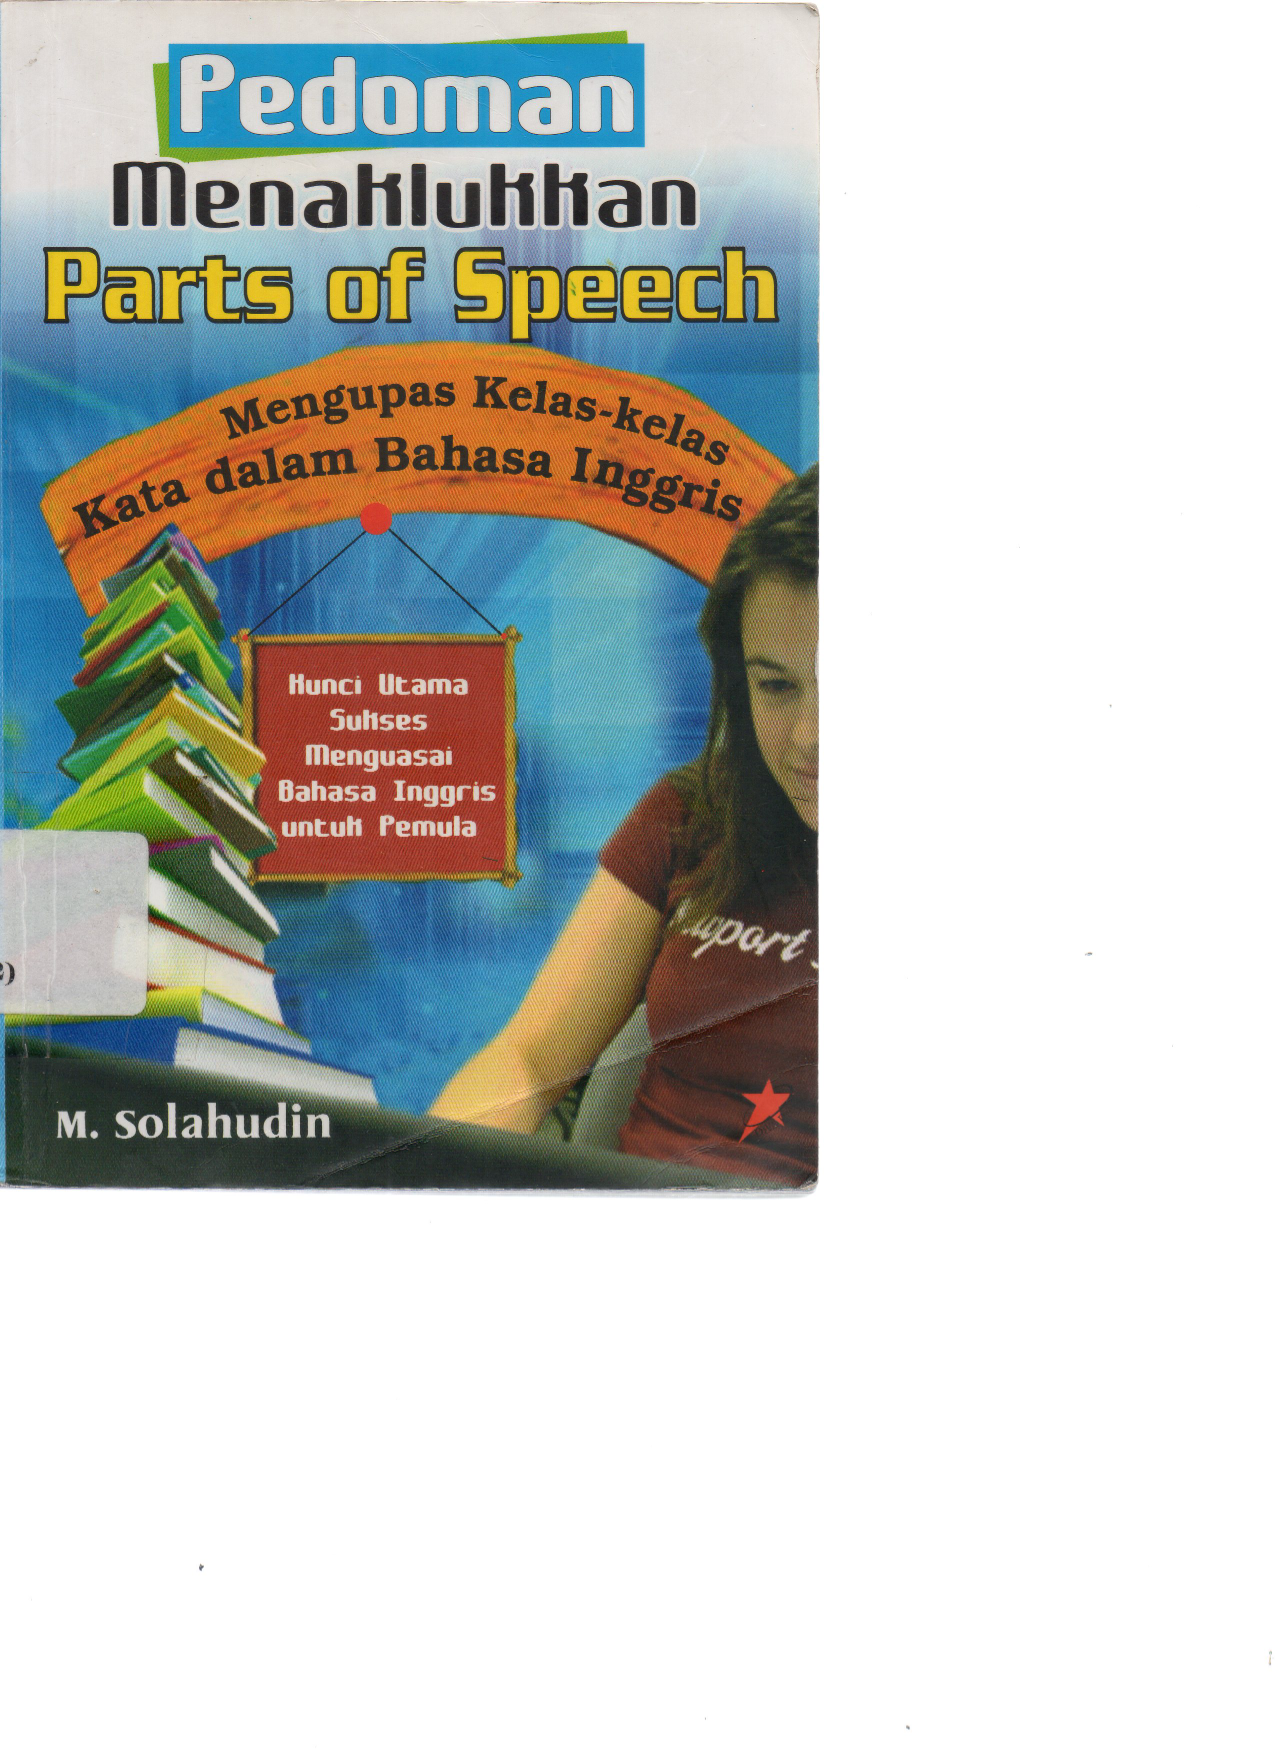 Pedoman Menaklukan Parts of Speech: Menghapus Kelas-kelas kata dalam Bahasa Inggris